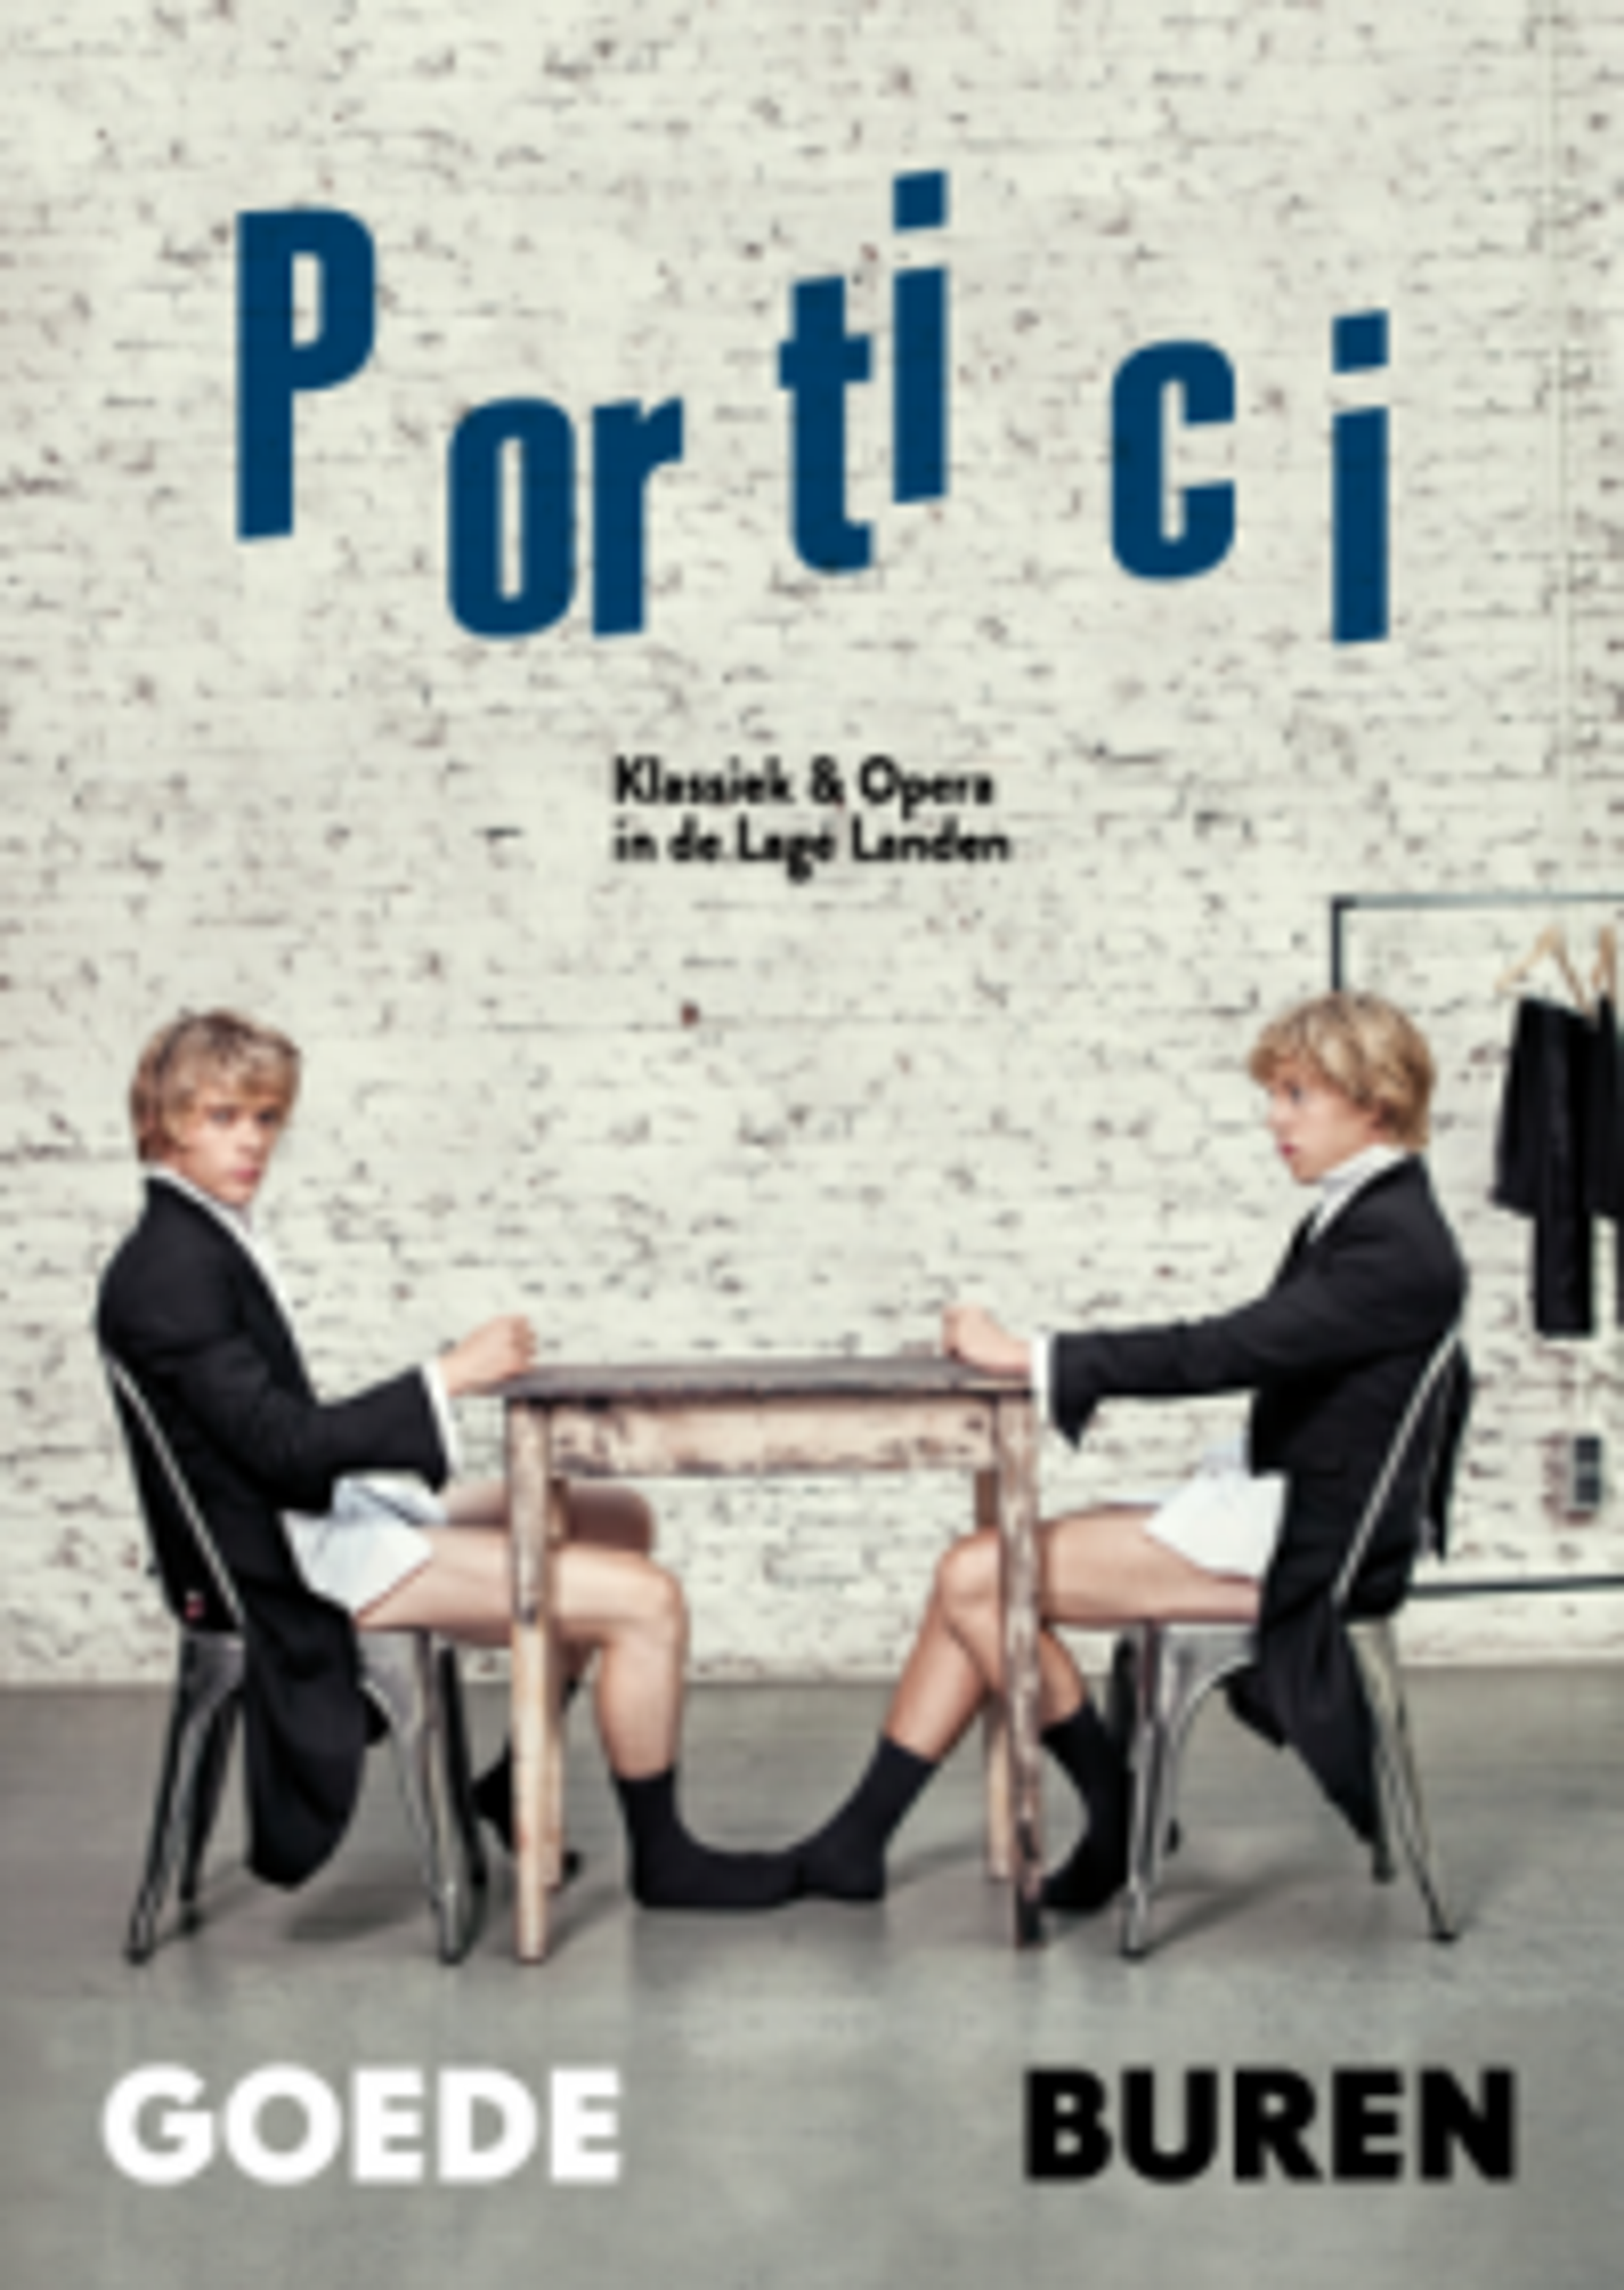 Nieuw klassiek en opera tijdschrift Portici Magazine